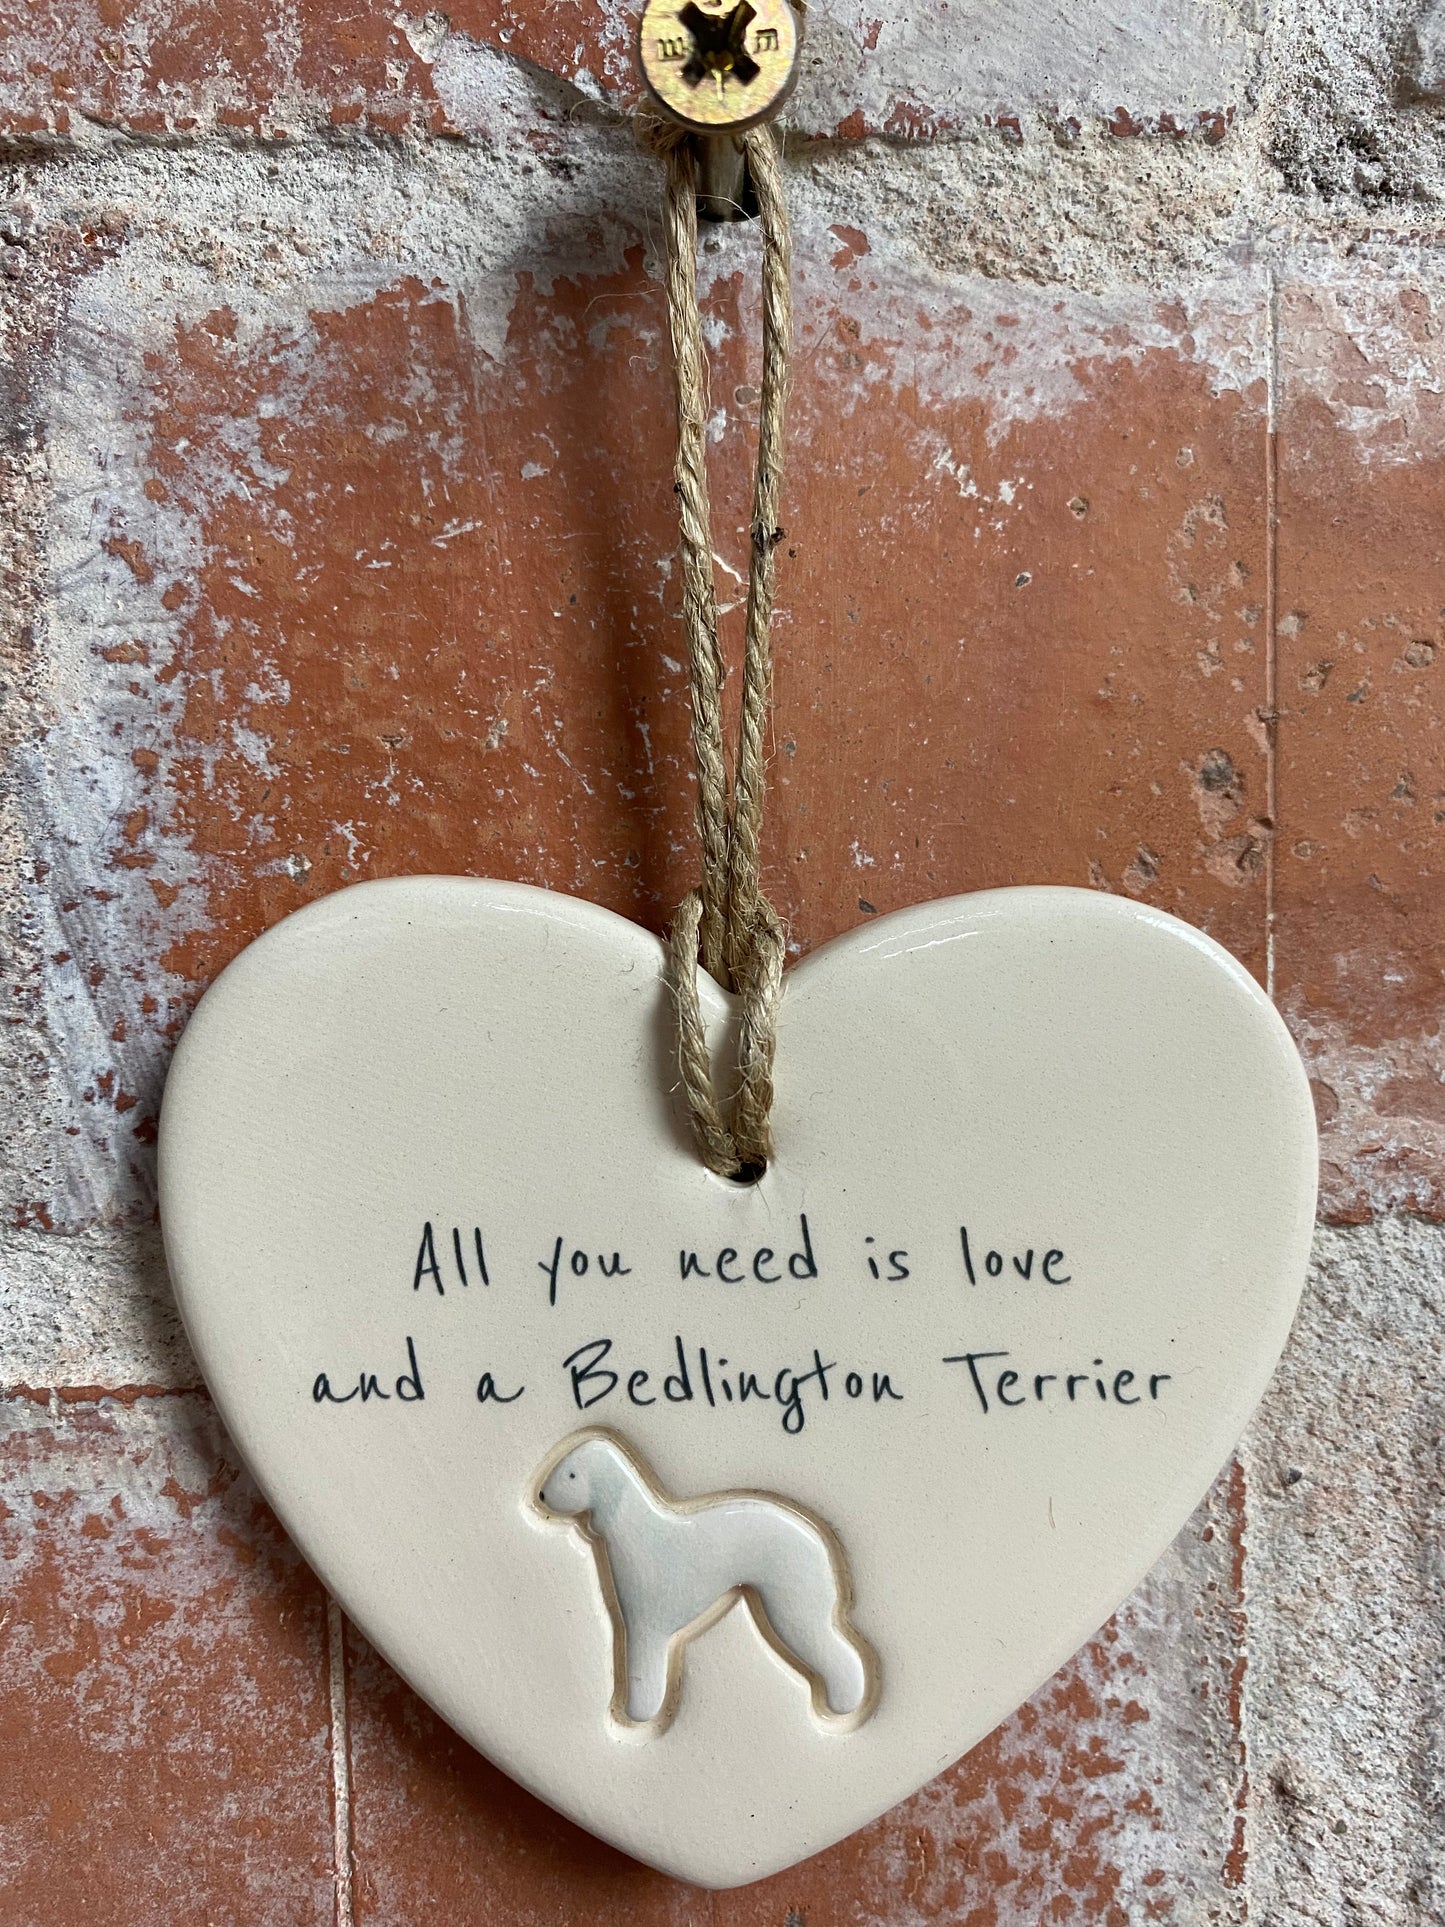 Bedlington Terrier ceramic heart